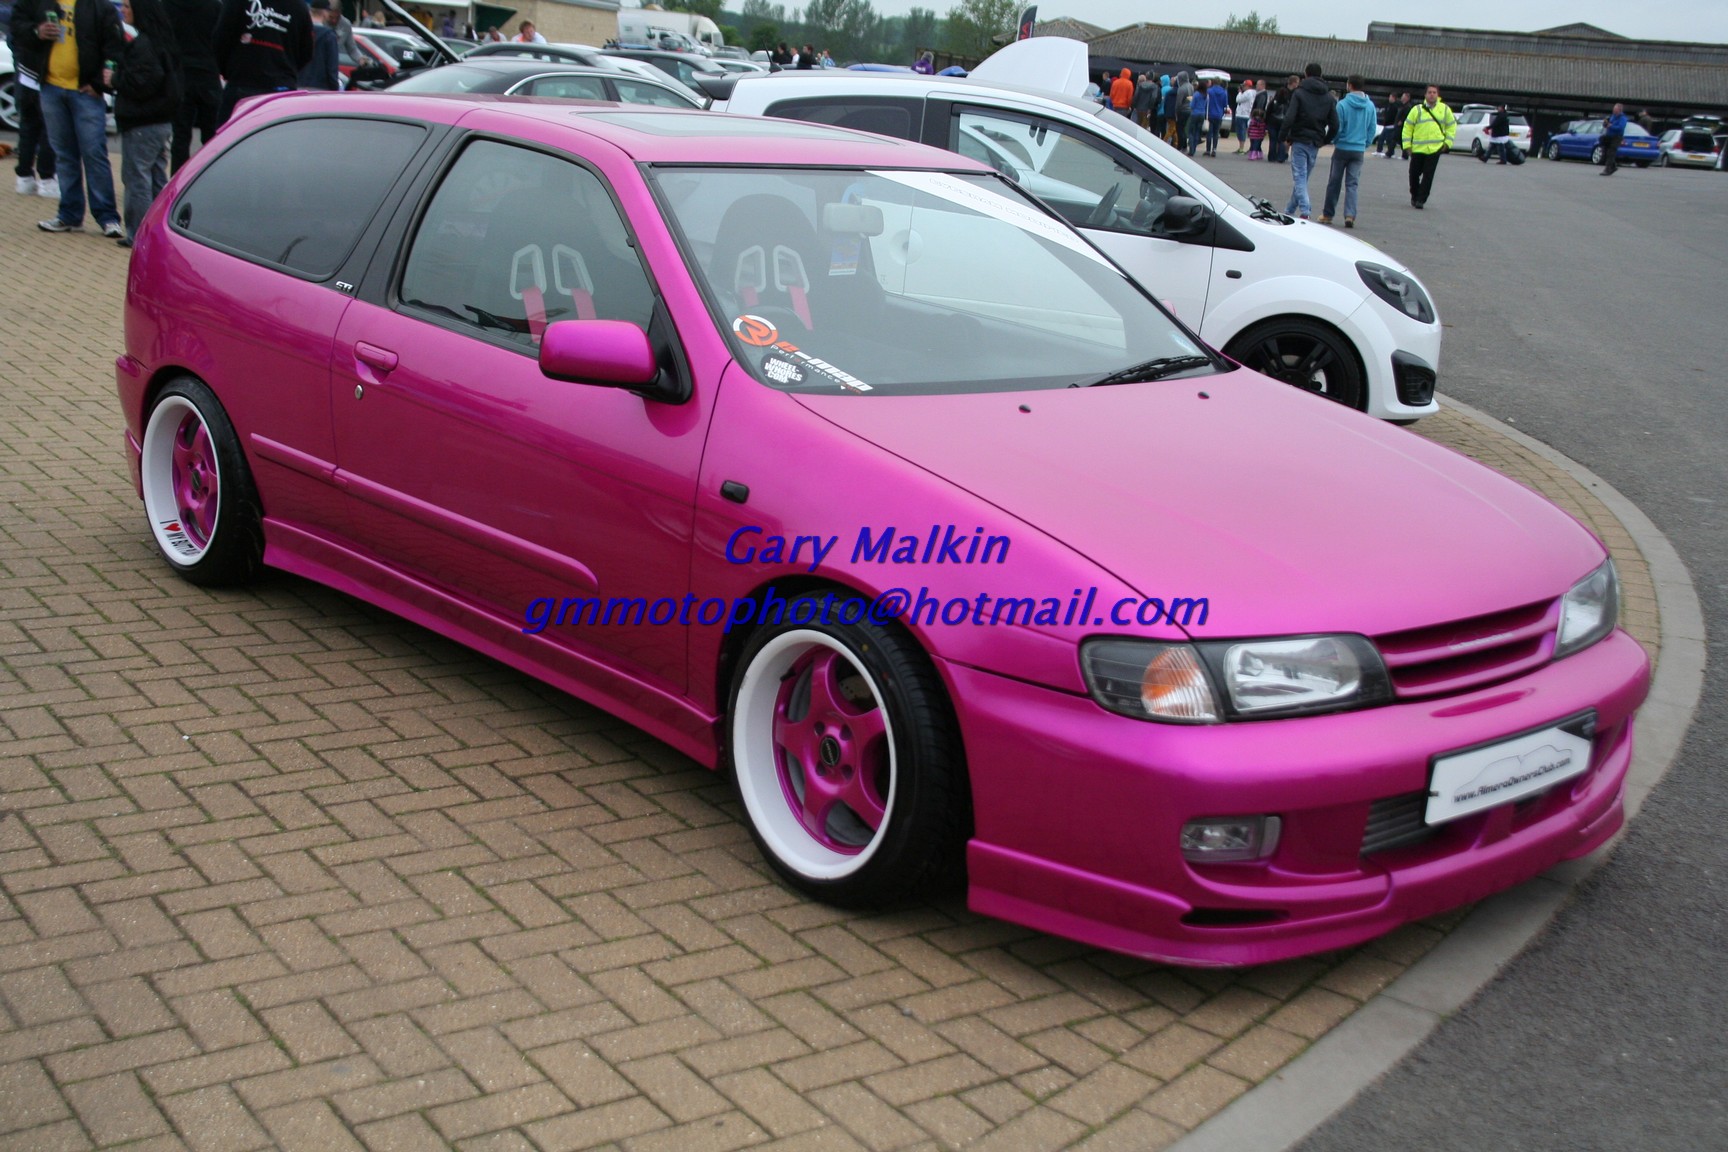 Nissan Almera (Pink) (Mod.Nats.12aa) | Flickr - Photo Sharing!